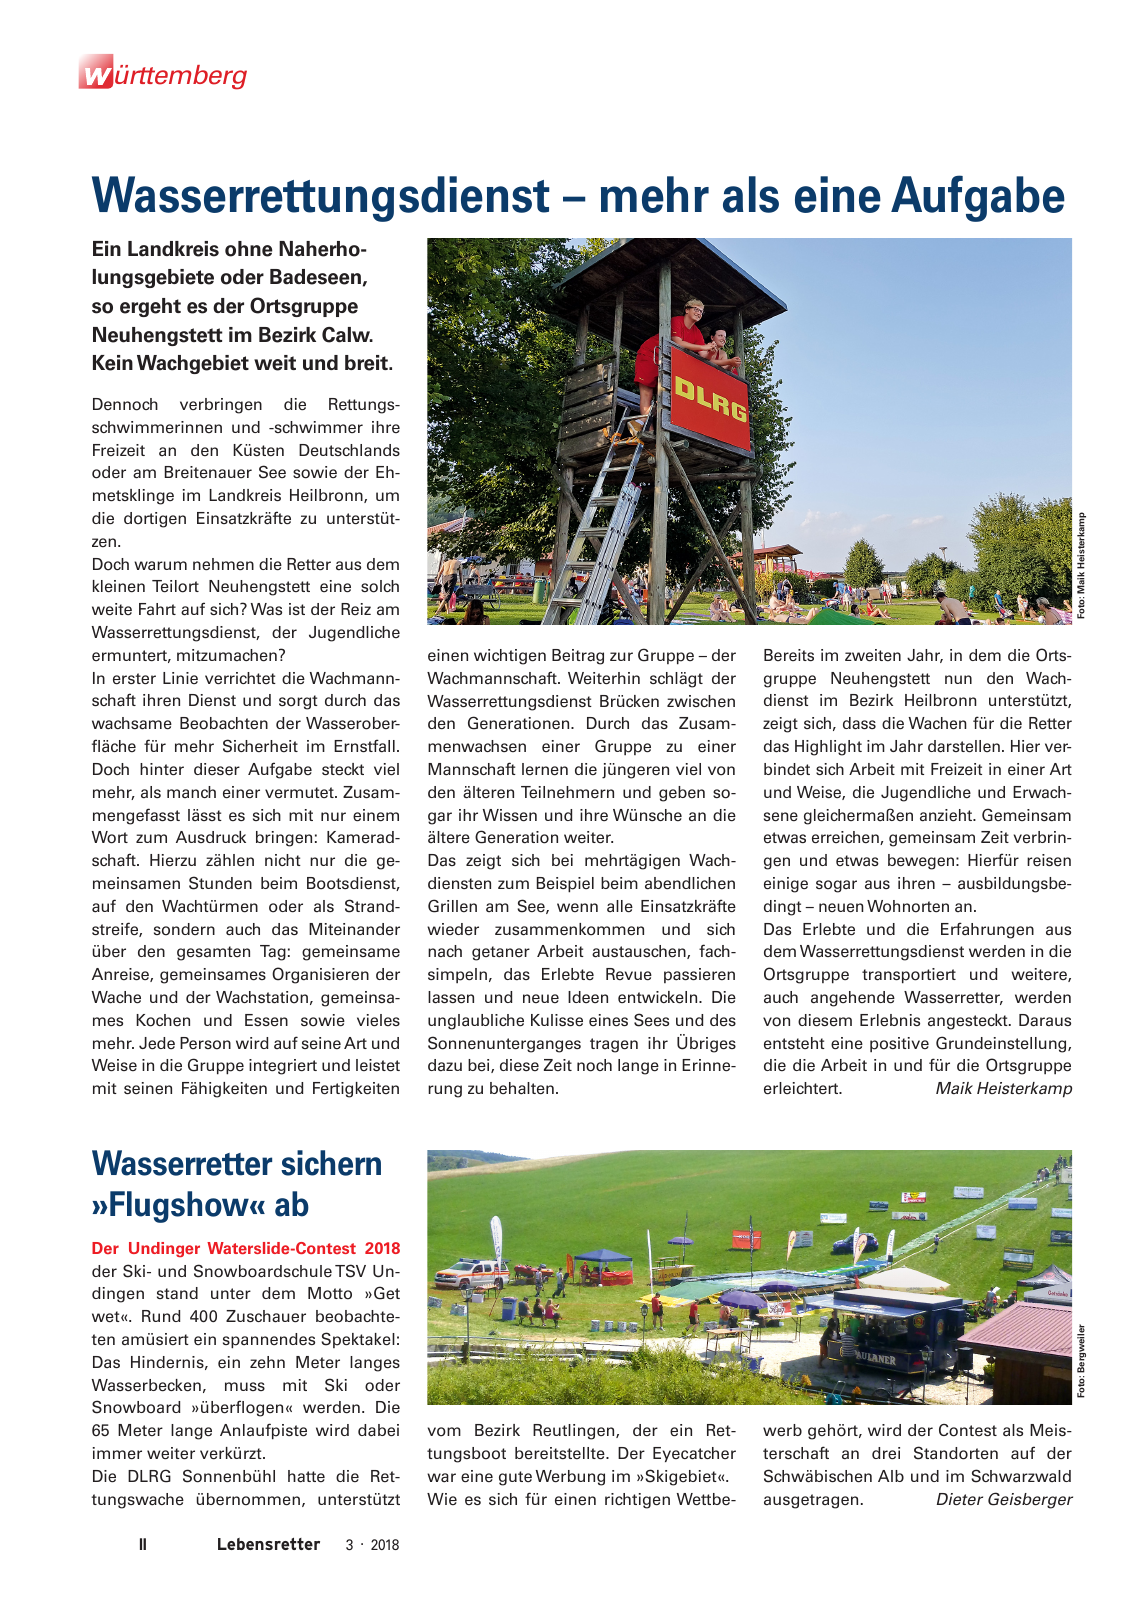 Vorschau Lebensretter 3/2018 - Regionalausgabe Württemberg Seite 4